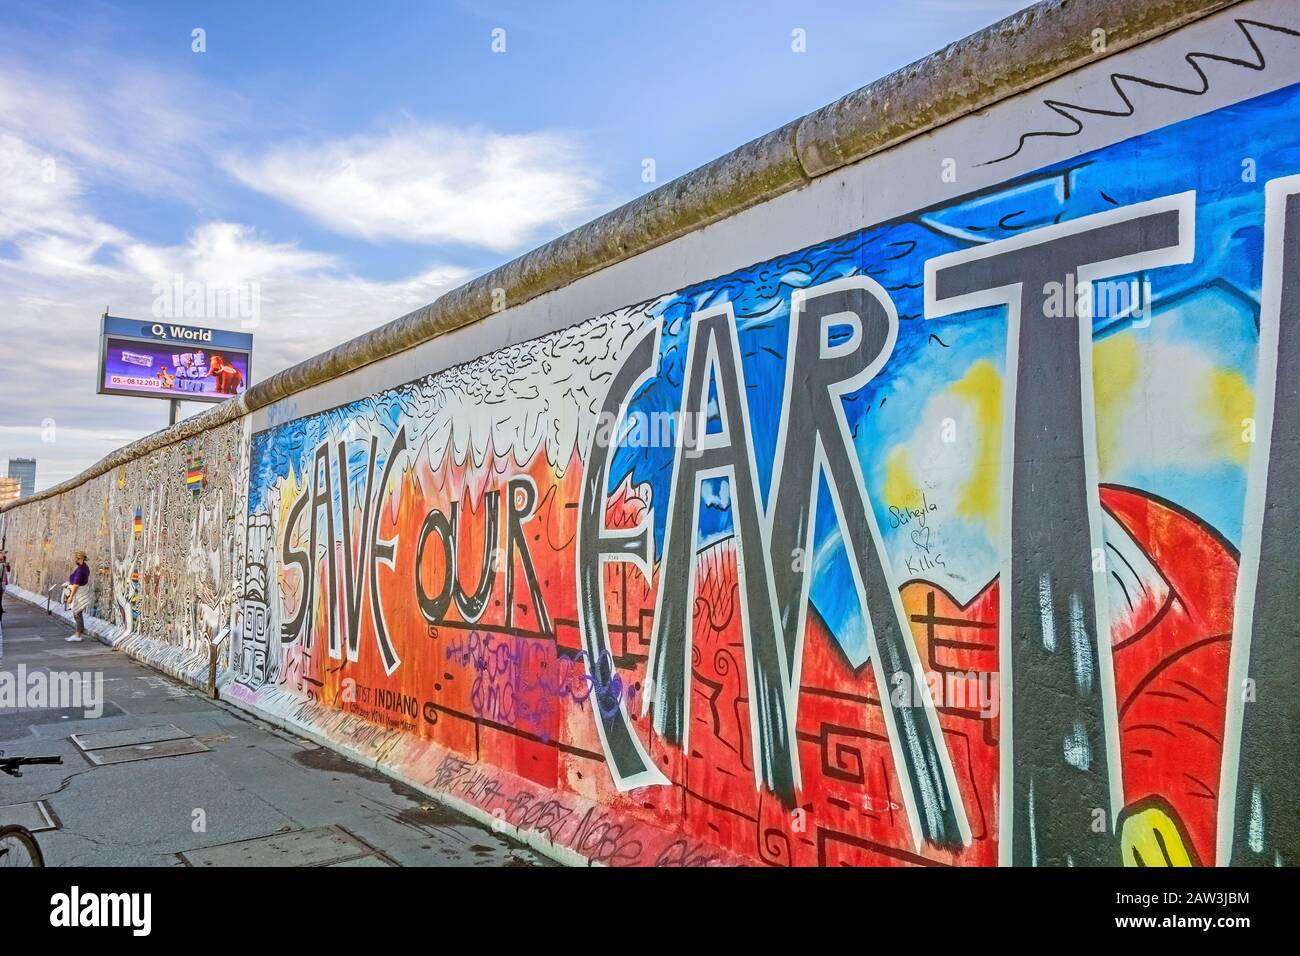 Berlin, Deutschland - 26. Oktober 2013: East Side Gallery - eine internationale Freiheitsdenkstätte. Ehemalige Berliner Mauer - eine Barriere innerhalb Deutschlands, teilt er mit Stockfoto